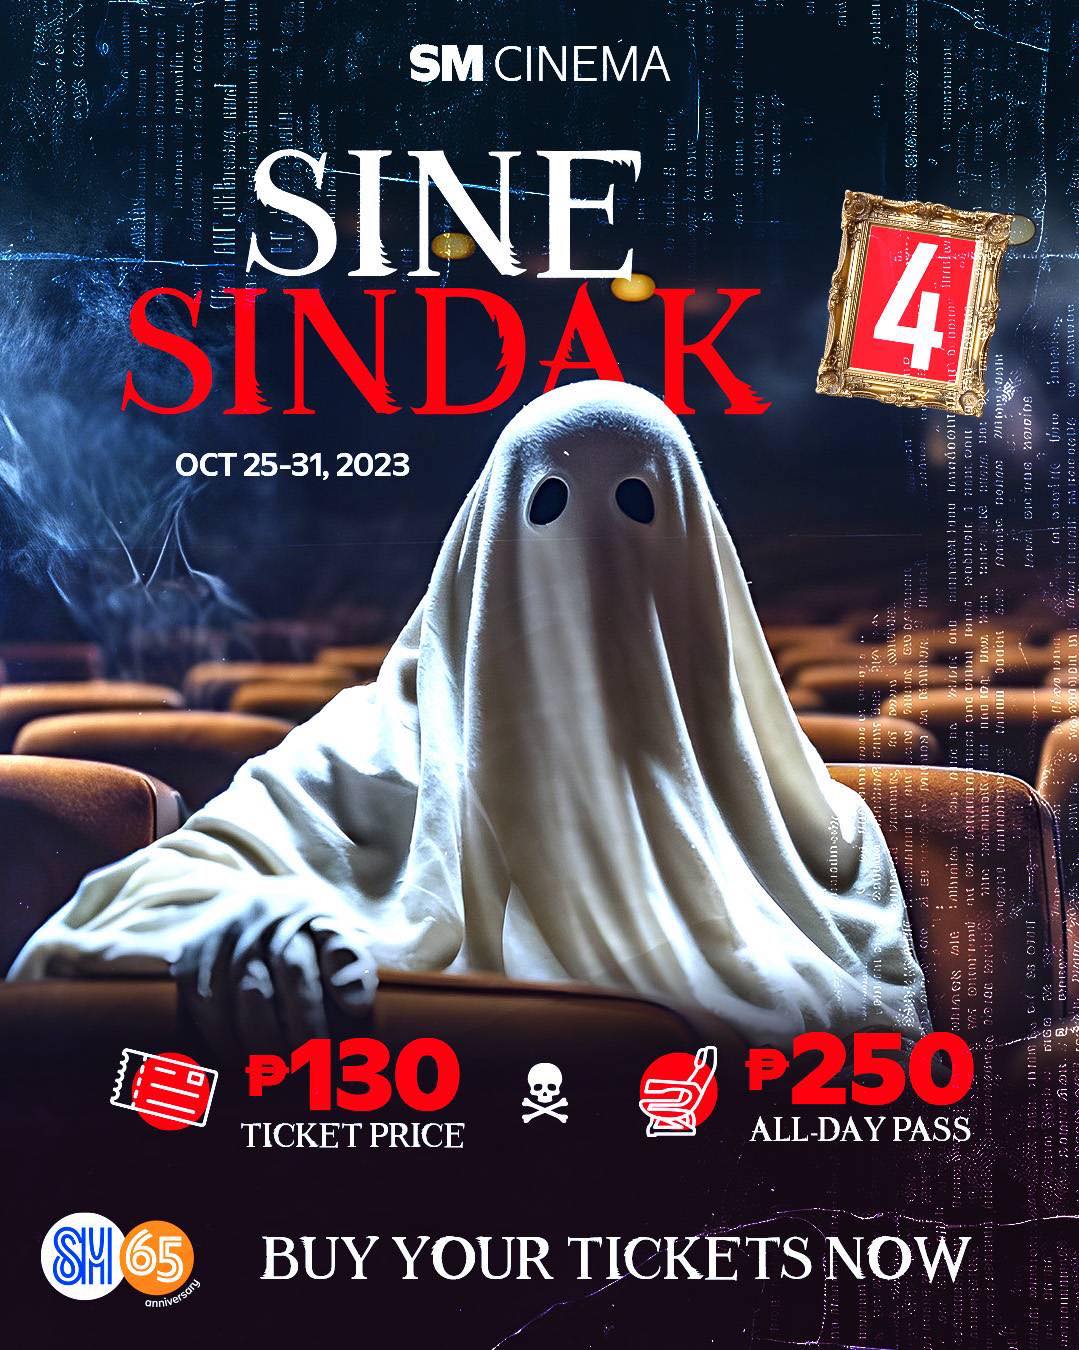 Get Ready To Scream With SM Cinema Sine Sindak